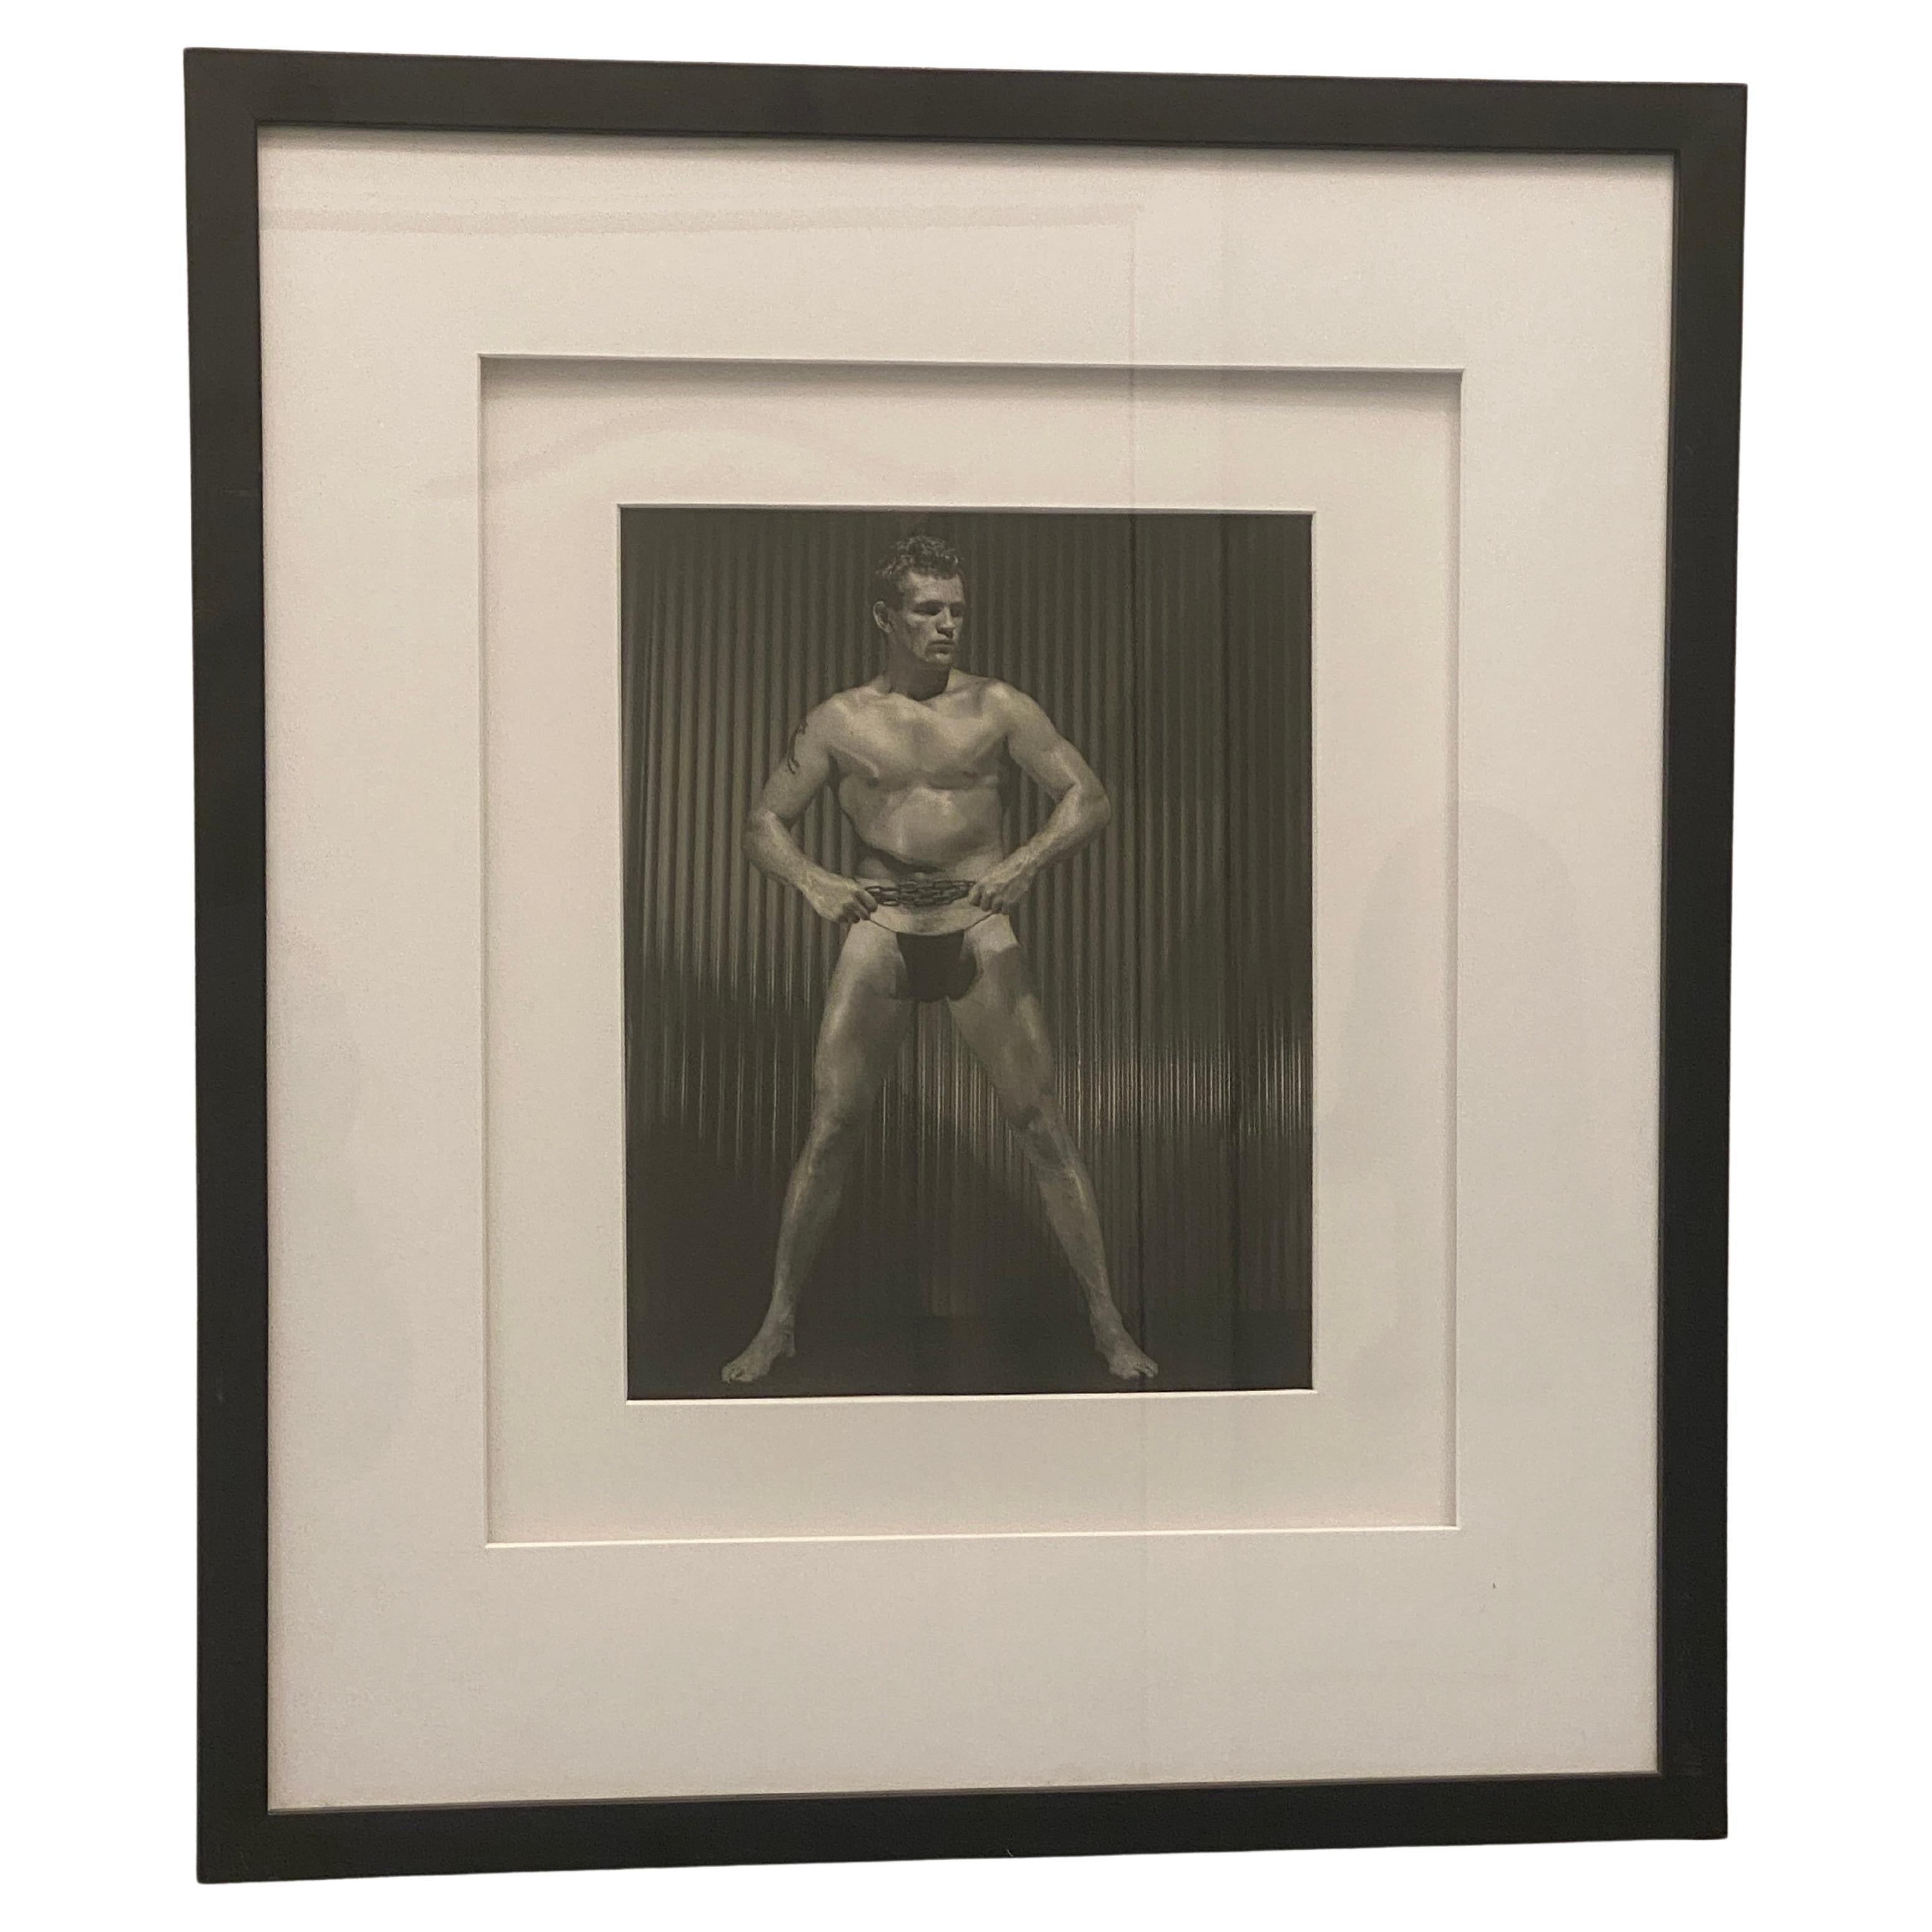 Aus einer bedeutenden, über 25 Jahre alten Sammlung von männlichen Körperbau- und Beefcake-Fotografien, ikonisches Bild eines männlichen Modells mit Metallkette. Sie wurden in den 1960er Jahren gedruckt und sind alle verso vom Studio signiert, als